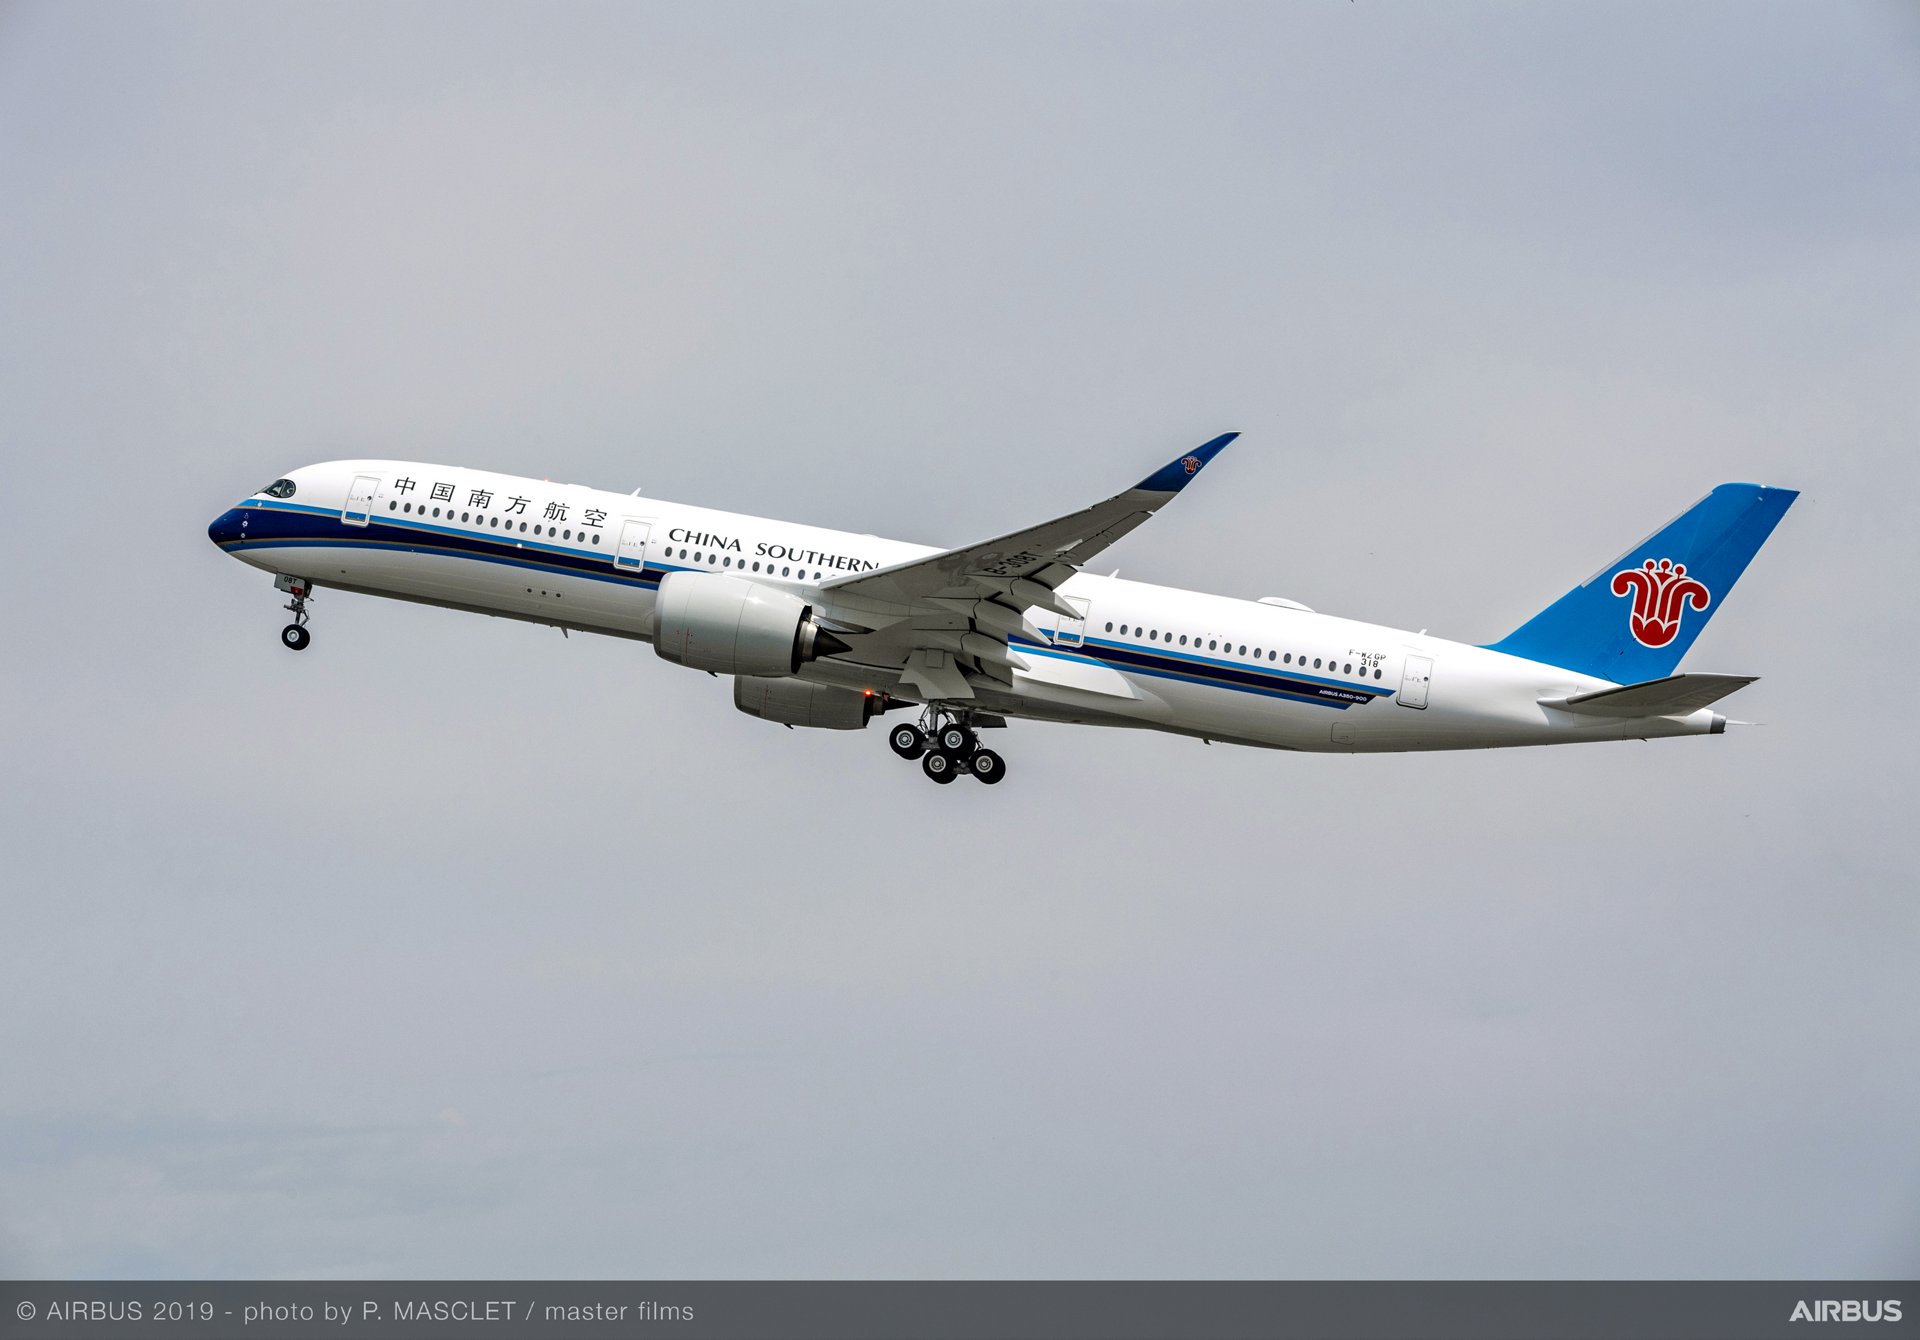 China Southern Airlines Ubernimmt Ihren Ersten Airbus A350